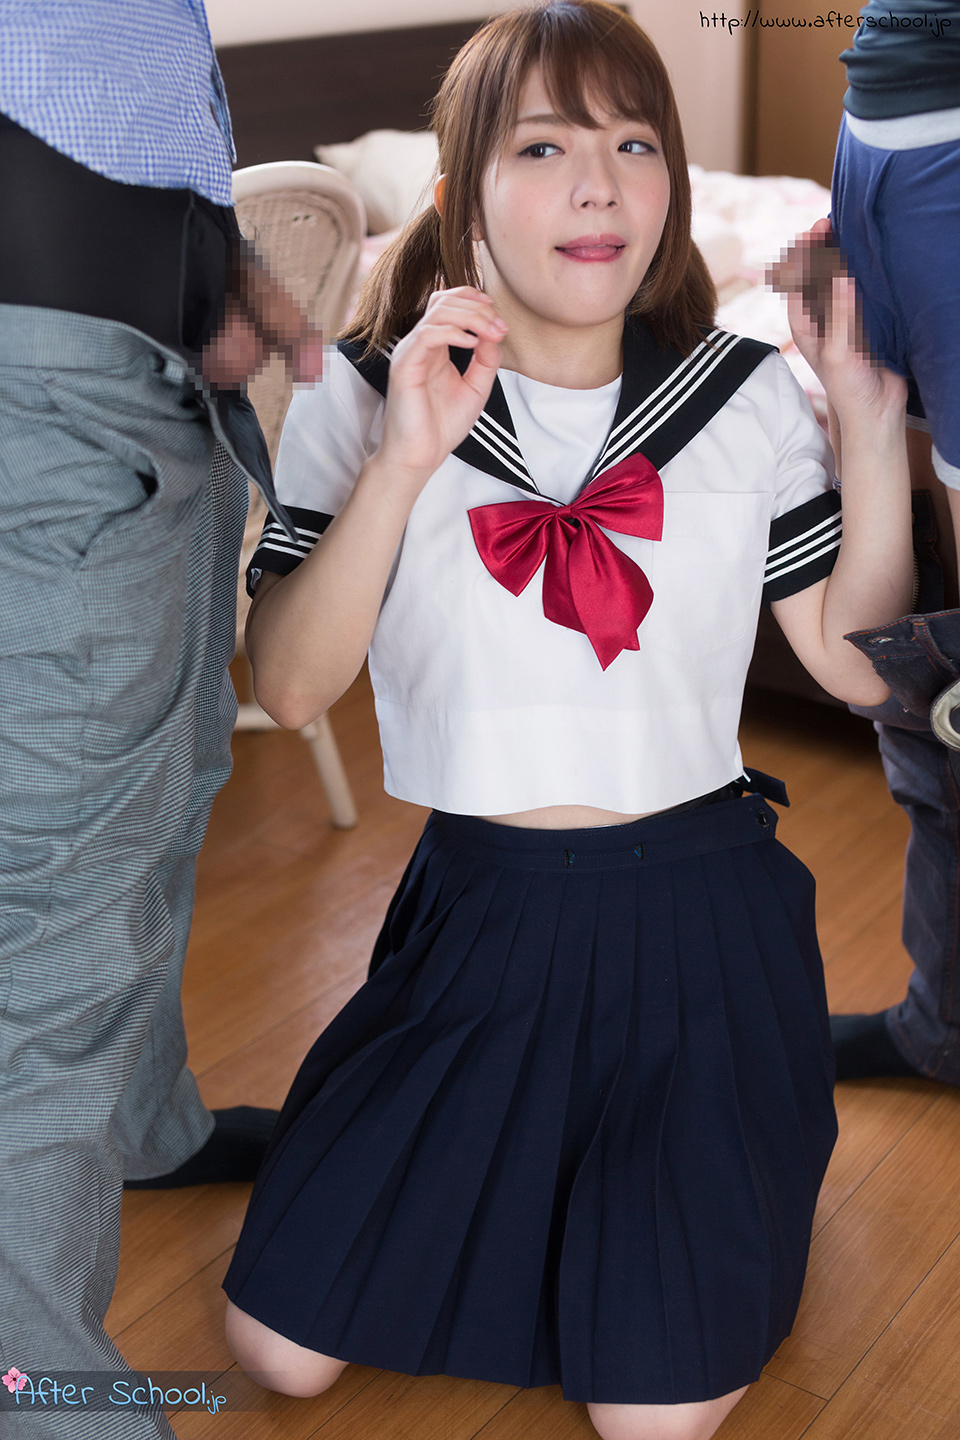 Japanese Av Skirt - Hardcore Japanese schoolgirl porn with Rika Mari - Teens In Asia